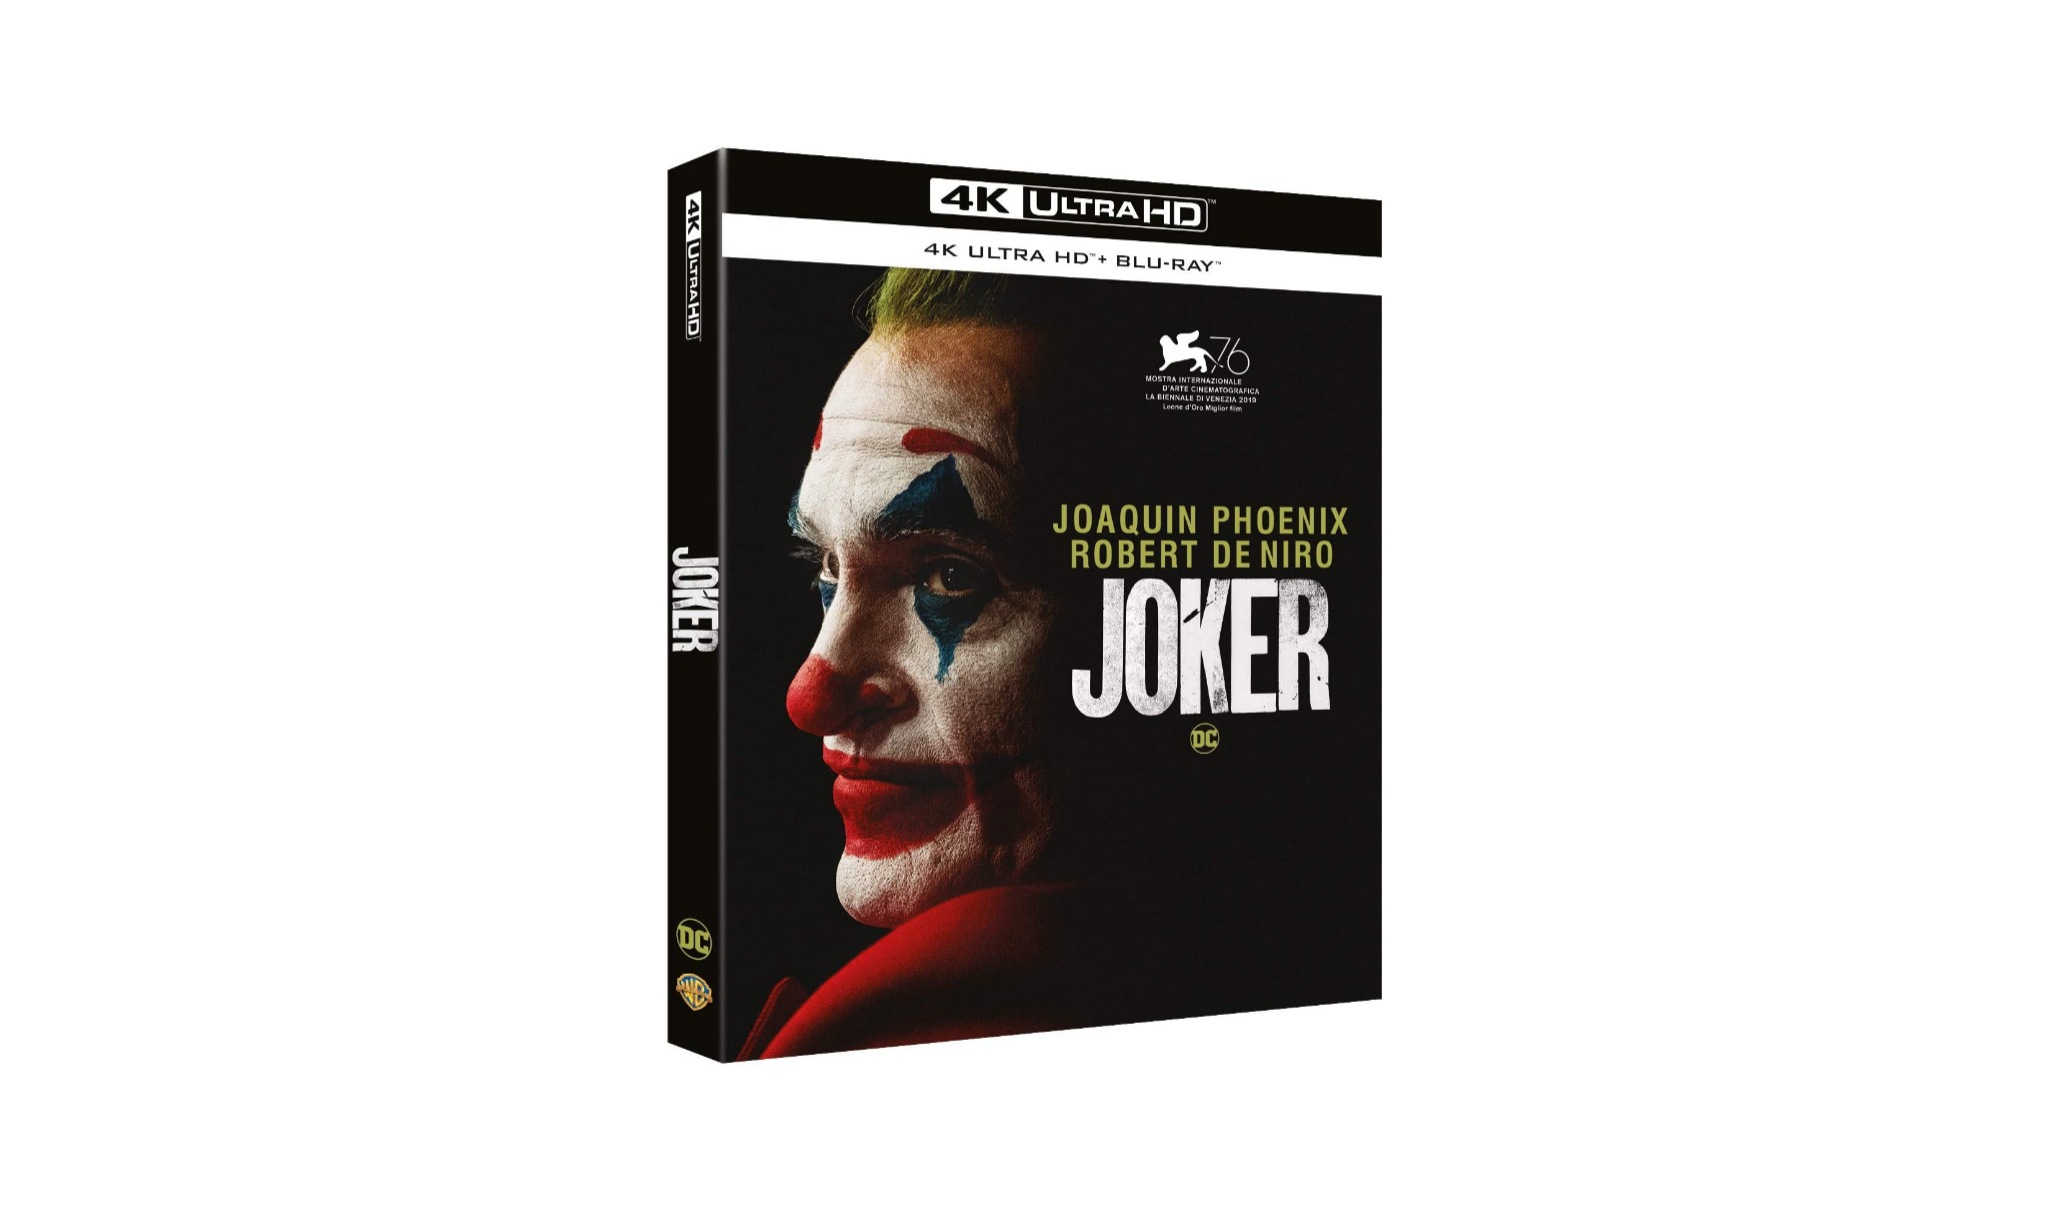 Joker blu-ray 4K